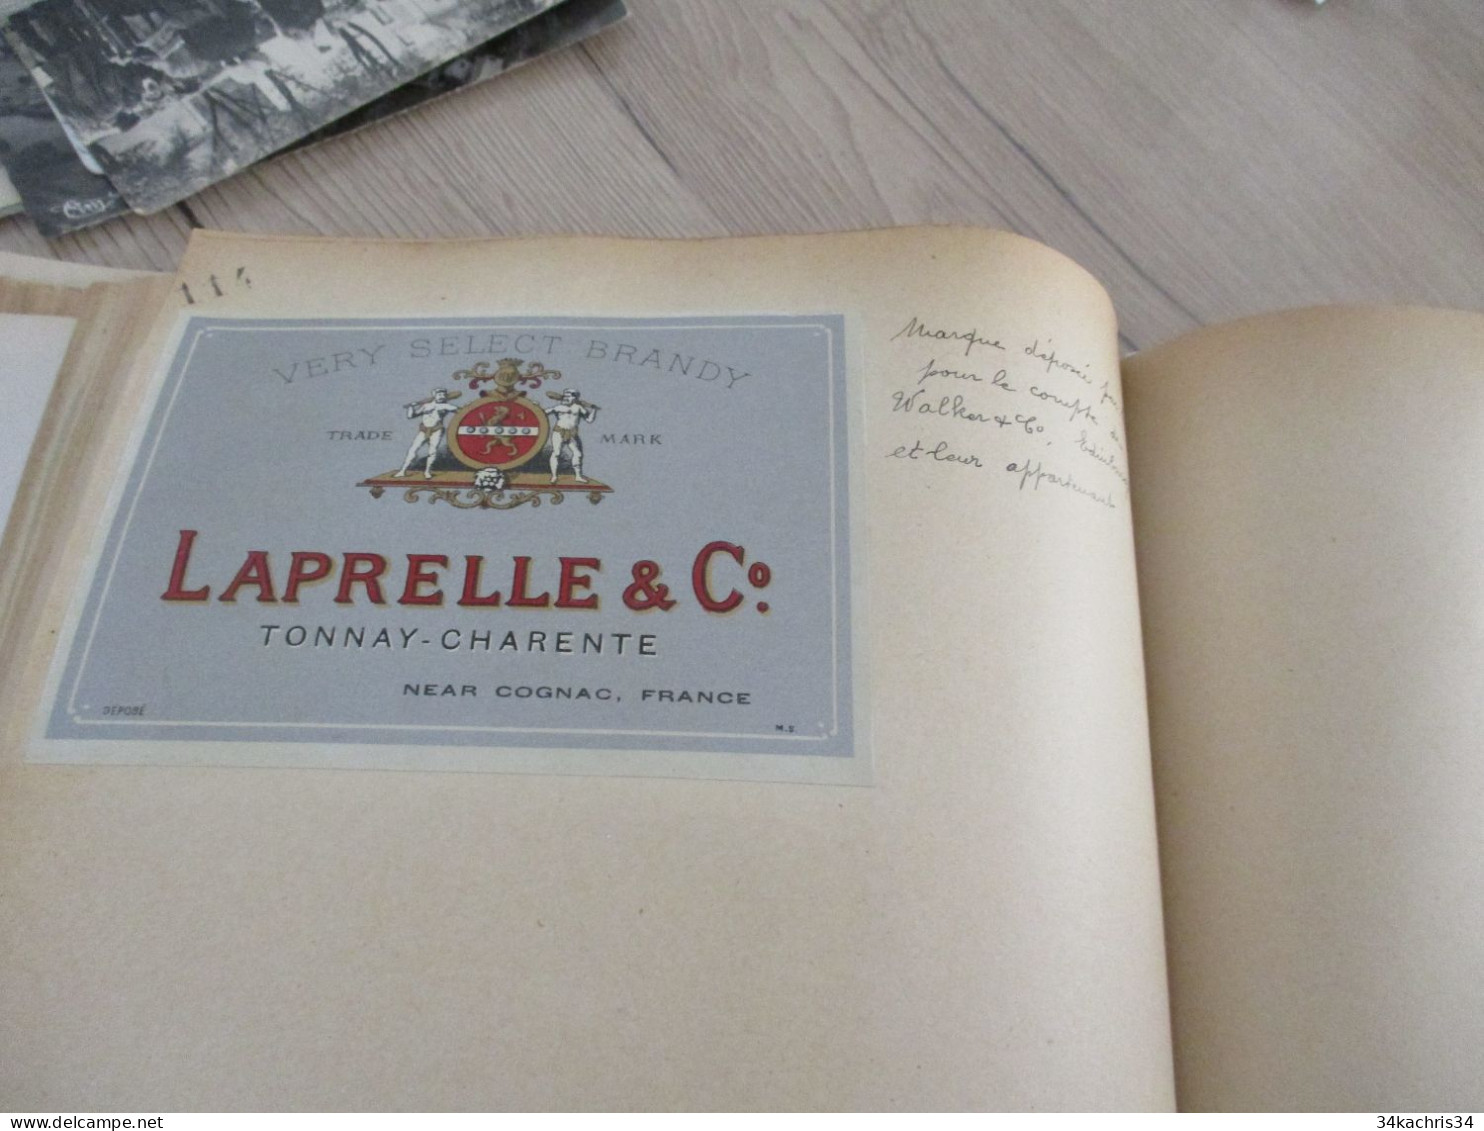 Livre des étiquettes et monopoles concédés Surtout Charente Cognac + de 100 documents